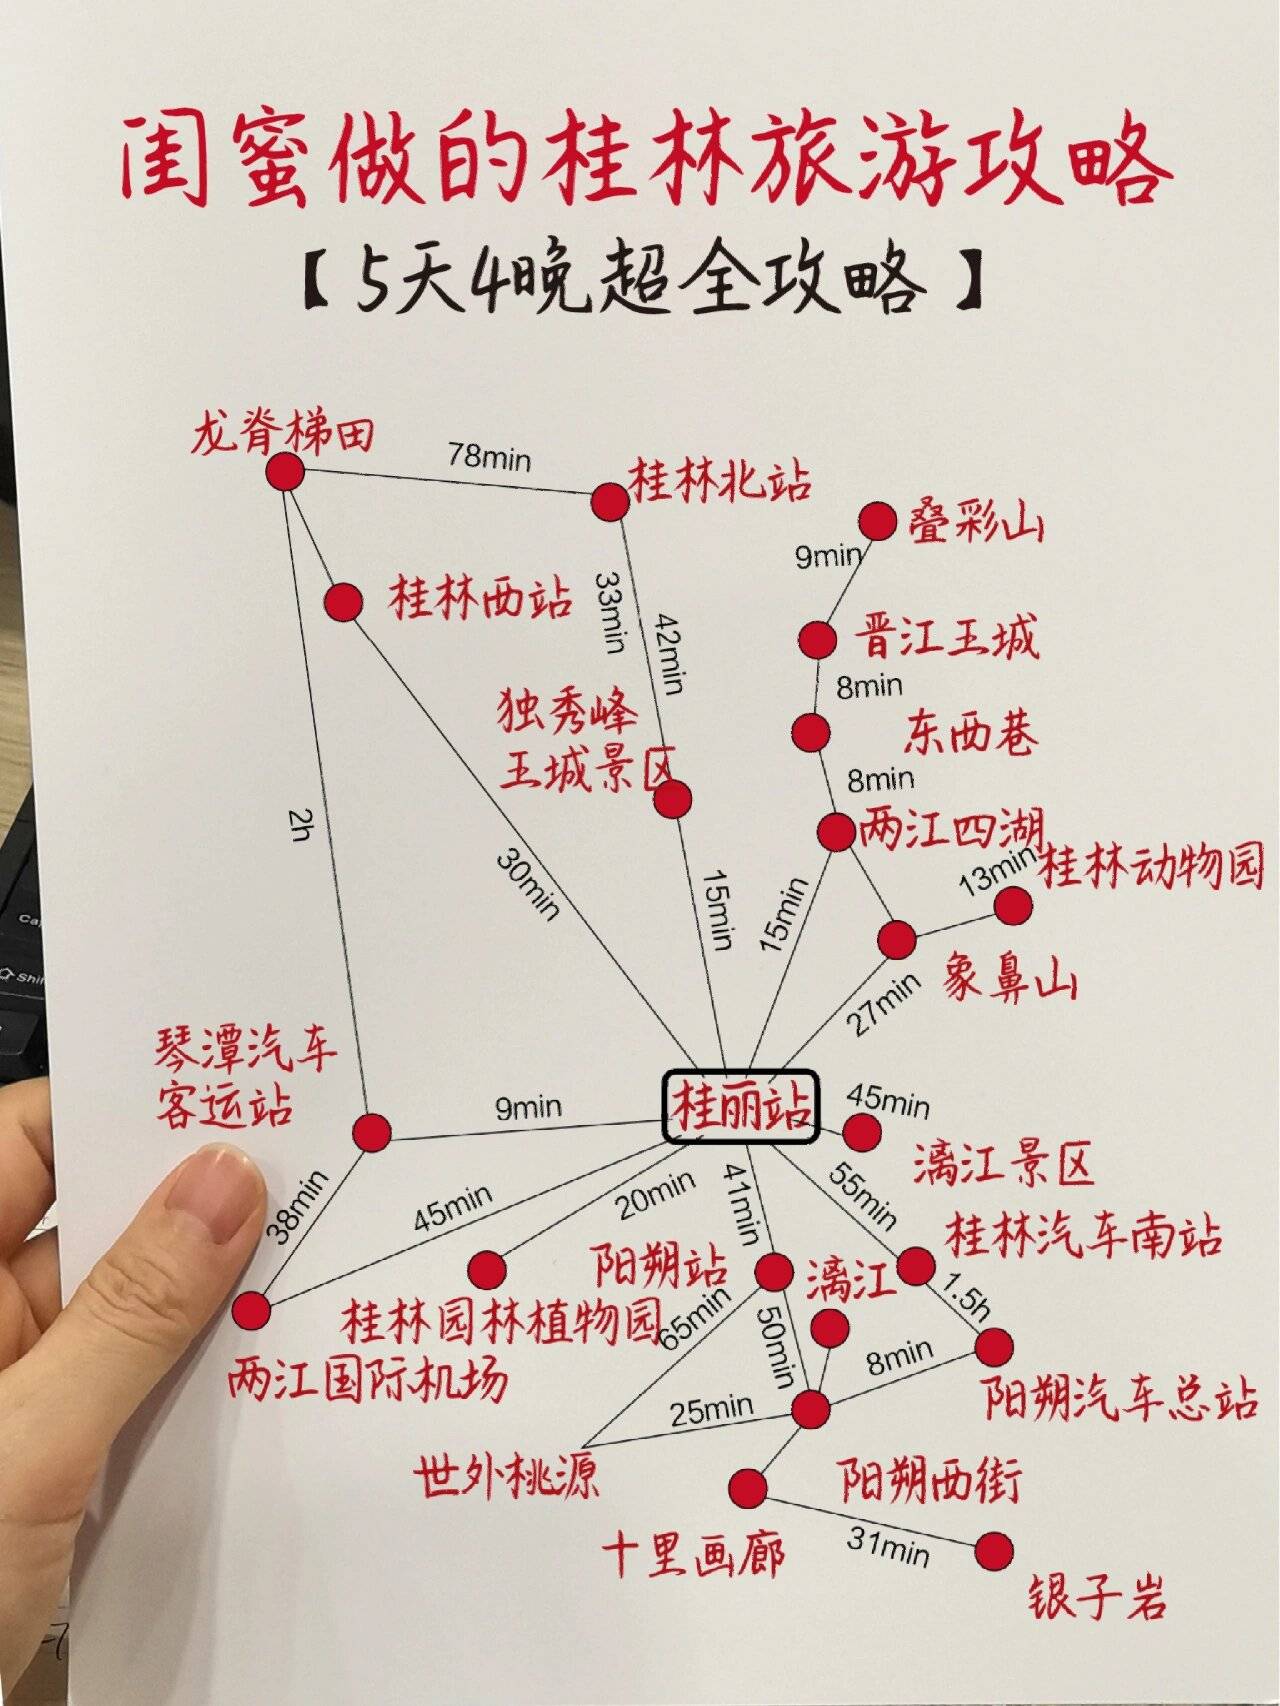 桂林地铁规划图片